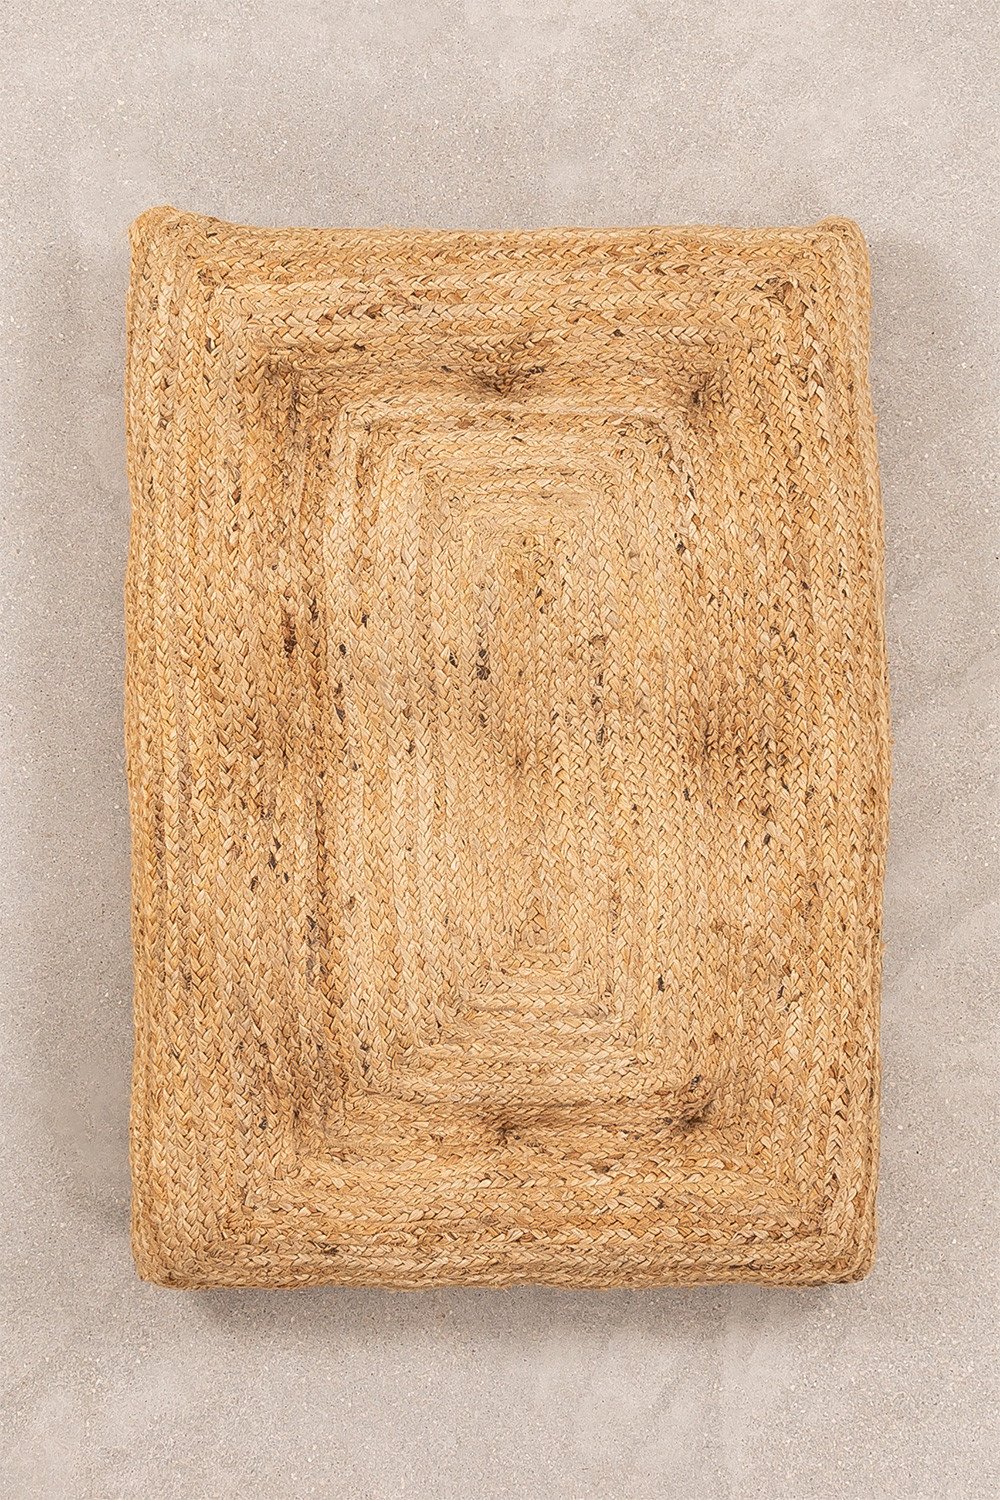 Futon z juty (60 cm x 90 cm) Fakip, obrazek w galerii 1